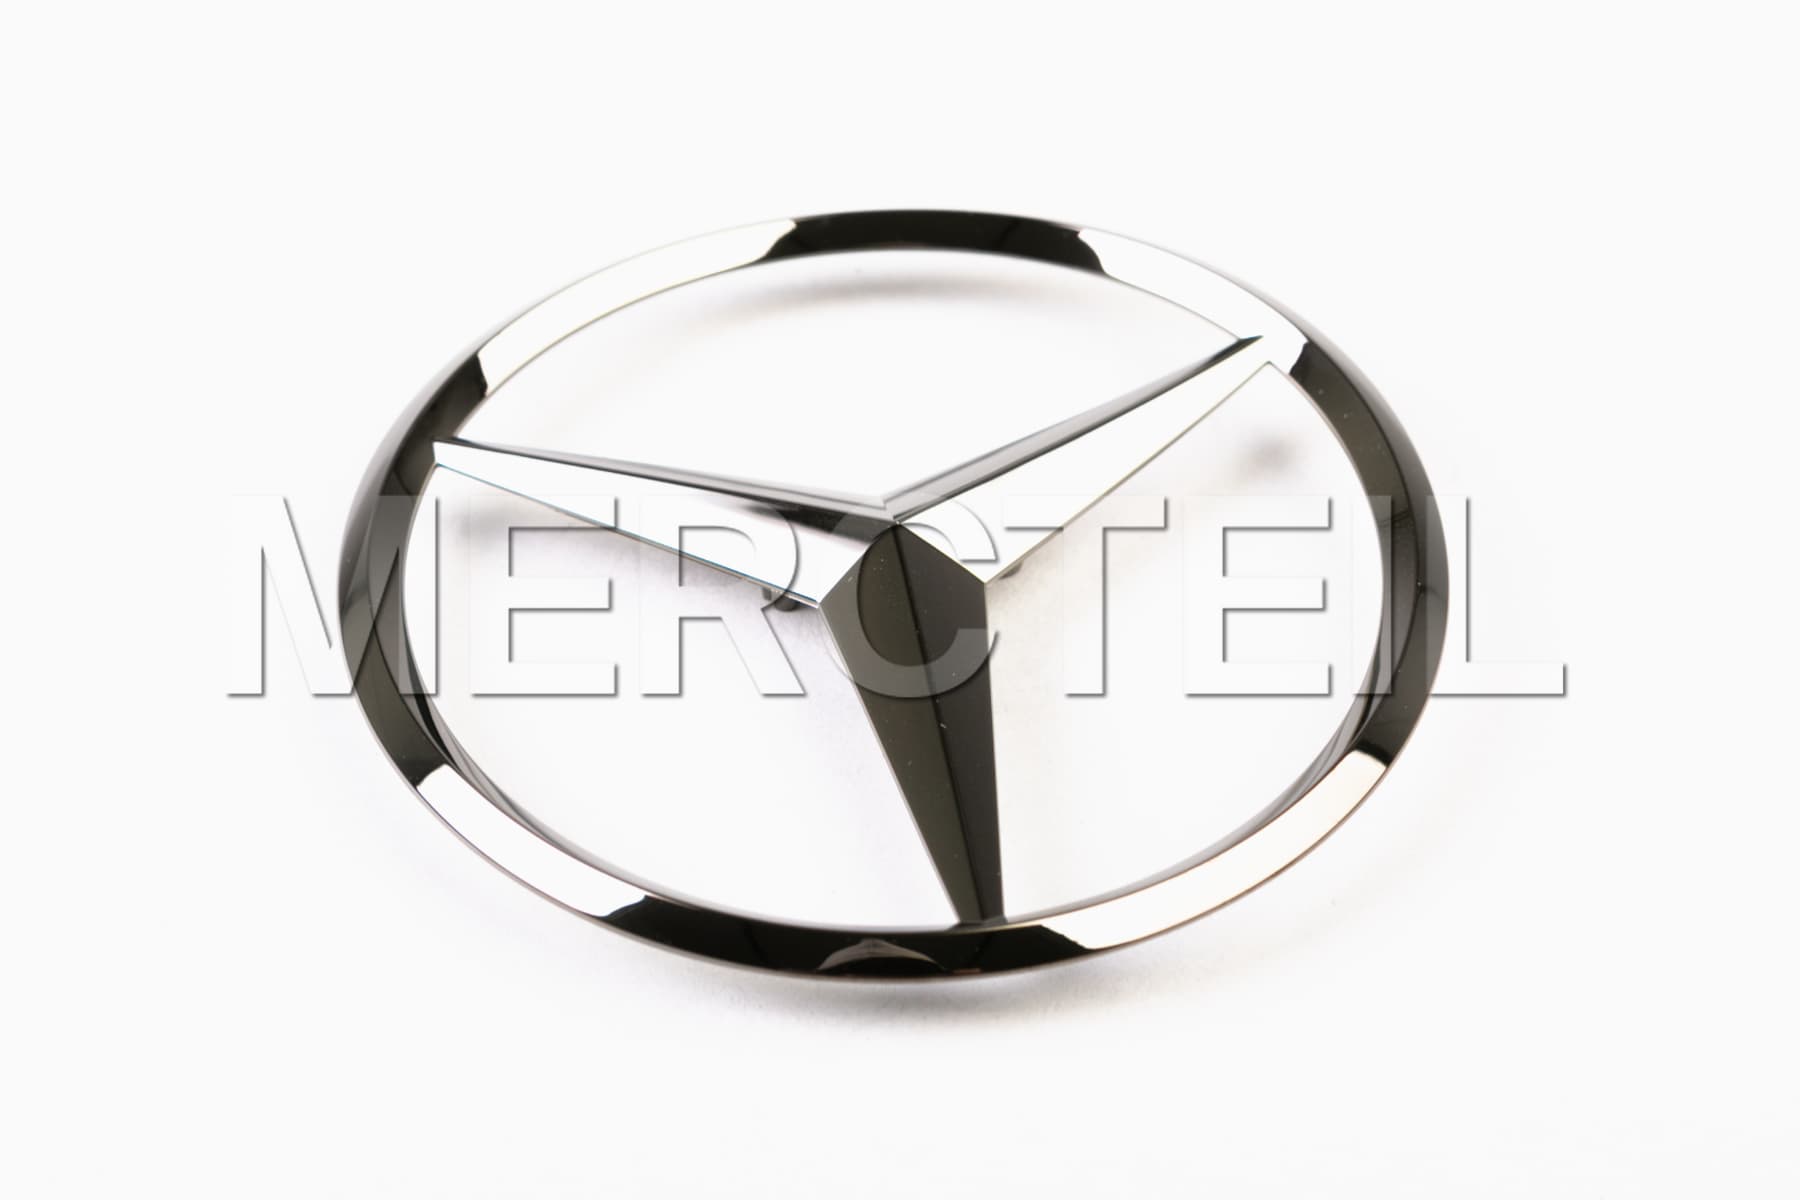 Mercedes Stern A-KLASSE LIMOUSINE (V 177) Heck BLACK DARK CHROME / lackiert  - Exclusiv veredelte Embleme aus der SCHWEIZ